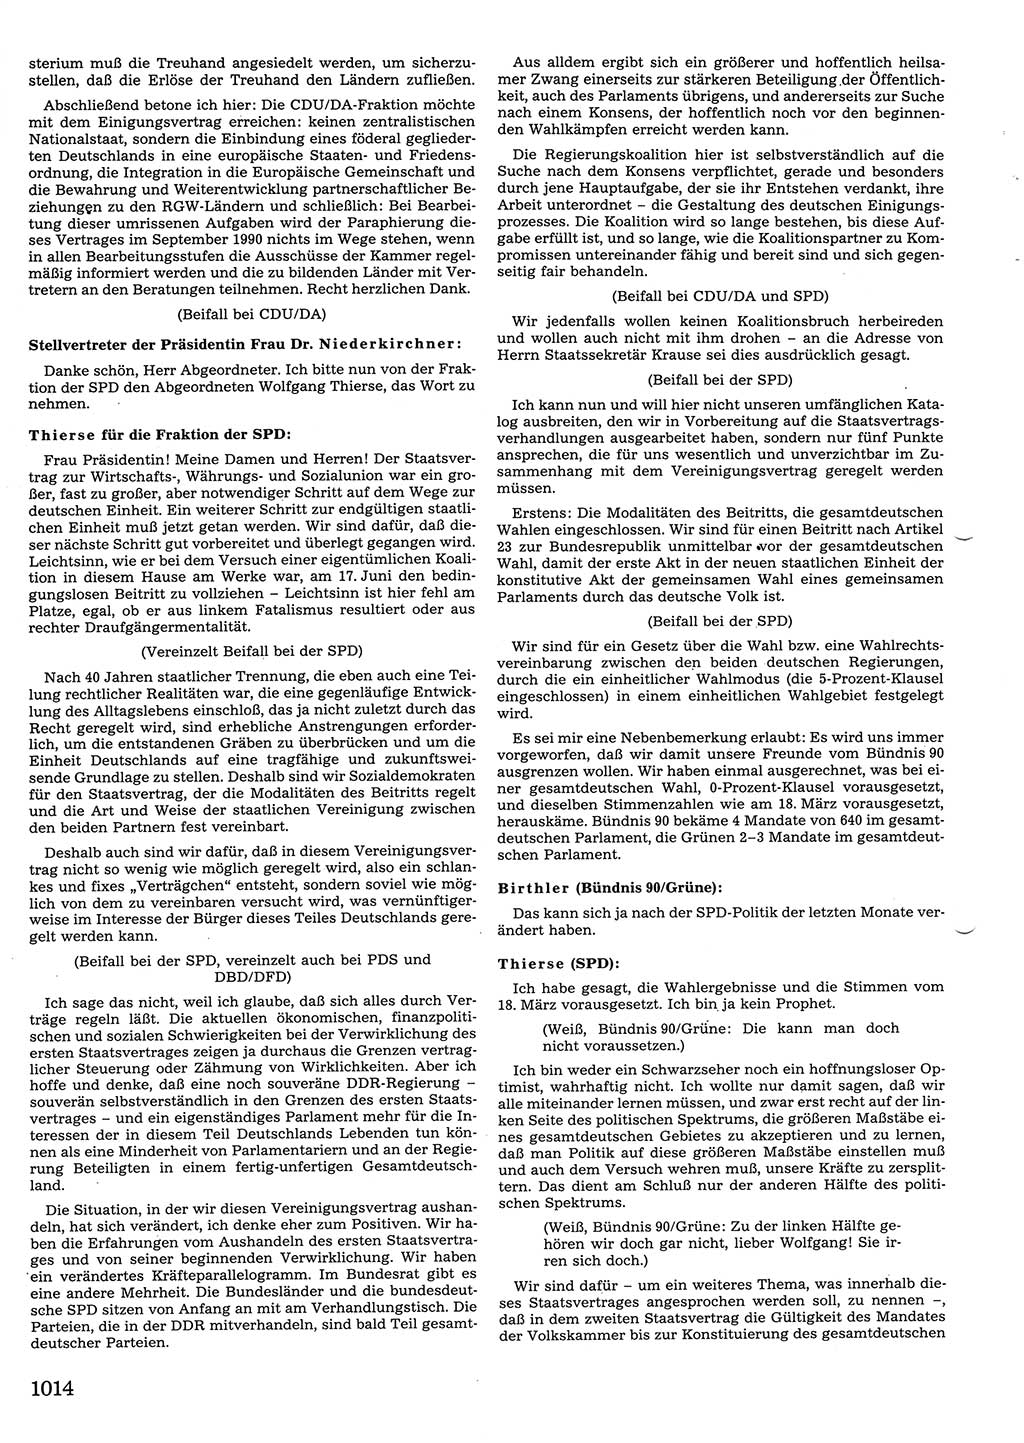 Tagungen der Volkskammer (VK) der Deutschen Demokratischen Republik (DDR), 10. Wahlperiode 1990, Seite 1014 (VK. DDR 10. WP. 1990, Prot. Tg. 1-38, 5.4.-2.10.1990, S. 1014)